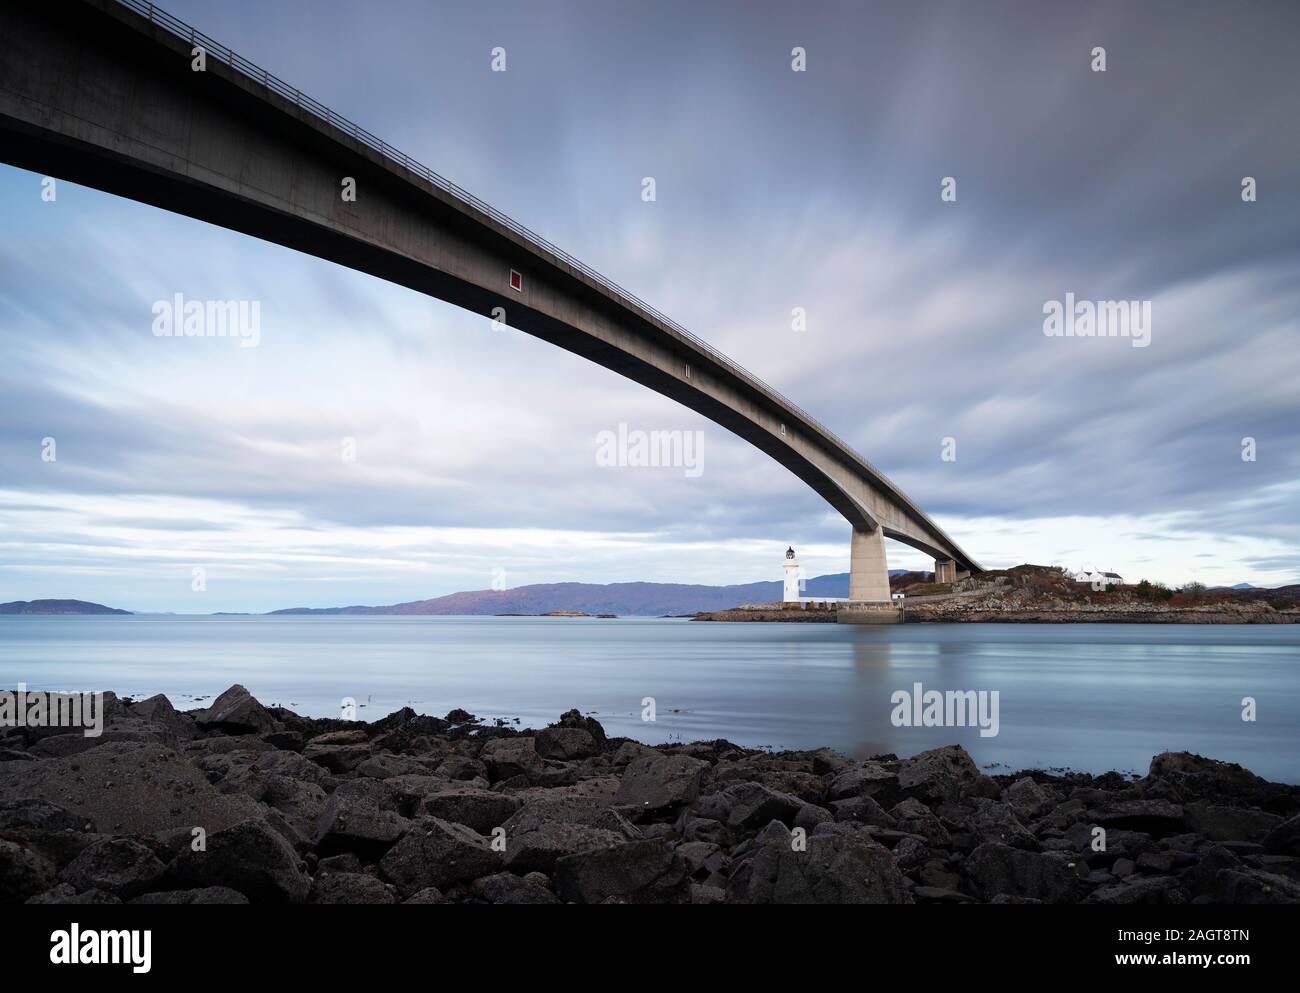 Fotografia Di © Jamie Callister. Isle of Skye Bridge, costruito nel 1995, Eilean Ban, Isle of Skye, North West Scotland, Regno Unito, 25th di novembre 2019. Foto Stock